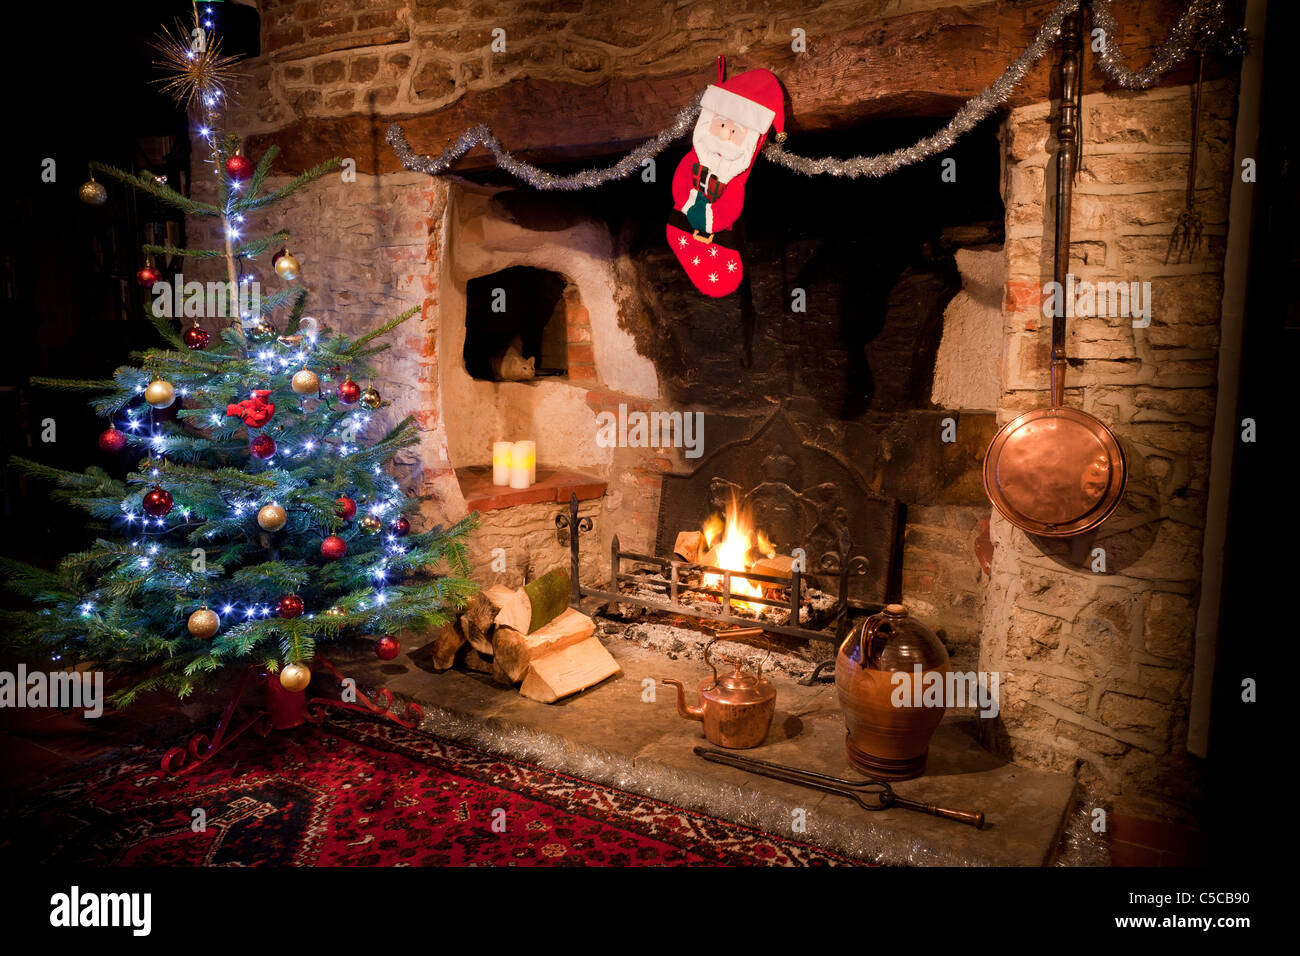 Chimenea en casa antigua con ardor bajo fuego de leña y el árbol de Navidad decorado, el almacenaje y la tetera de cobre. JMH5162 Foto de stock